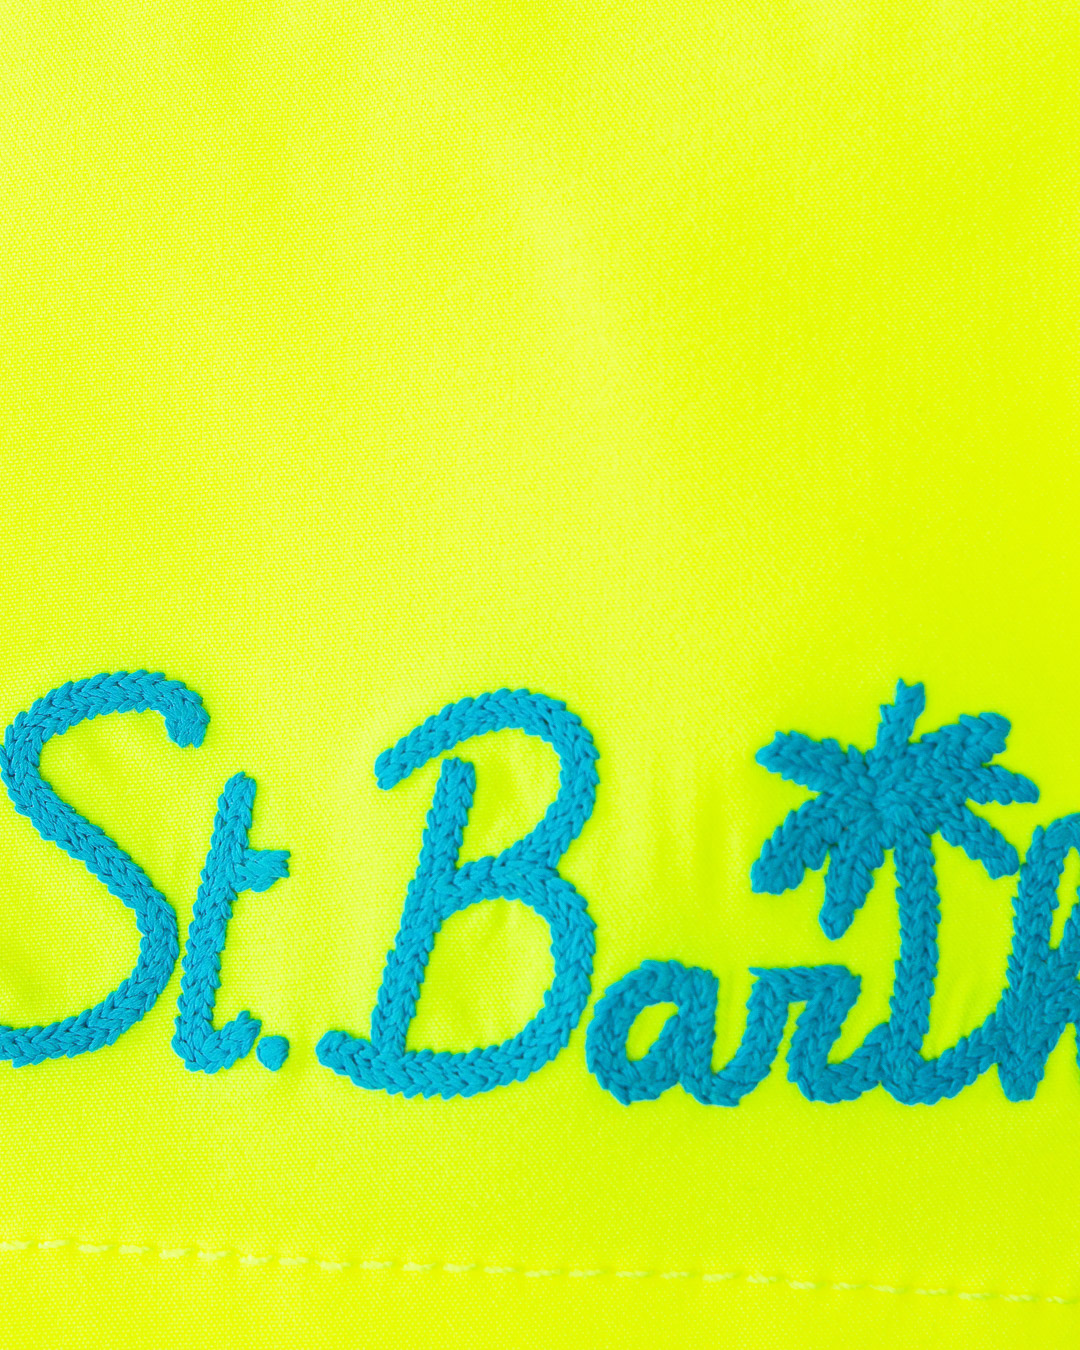 шорты MC2 Saint Barth STBM COMFORT салатовый+синий xl, размер xl, цвет салатовый+синий STBM COMFORT салатовый+синий xl - фото 2